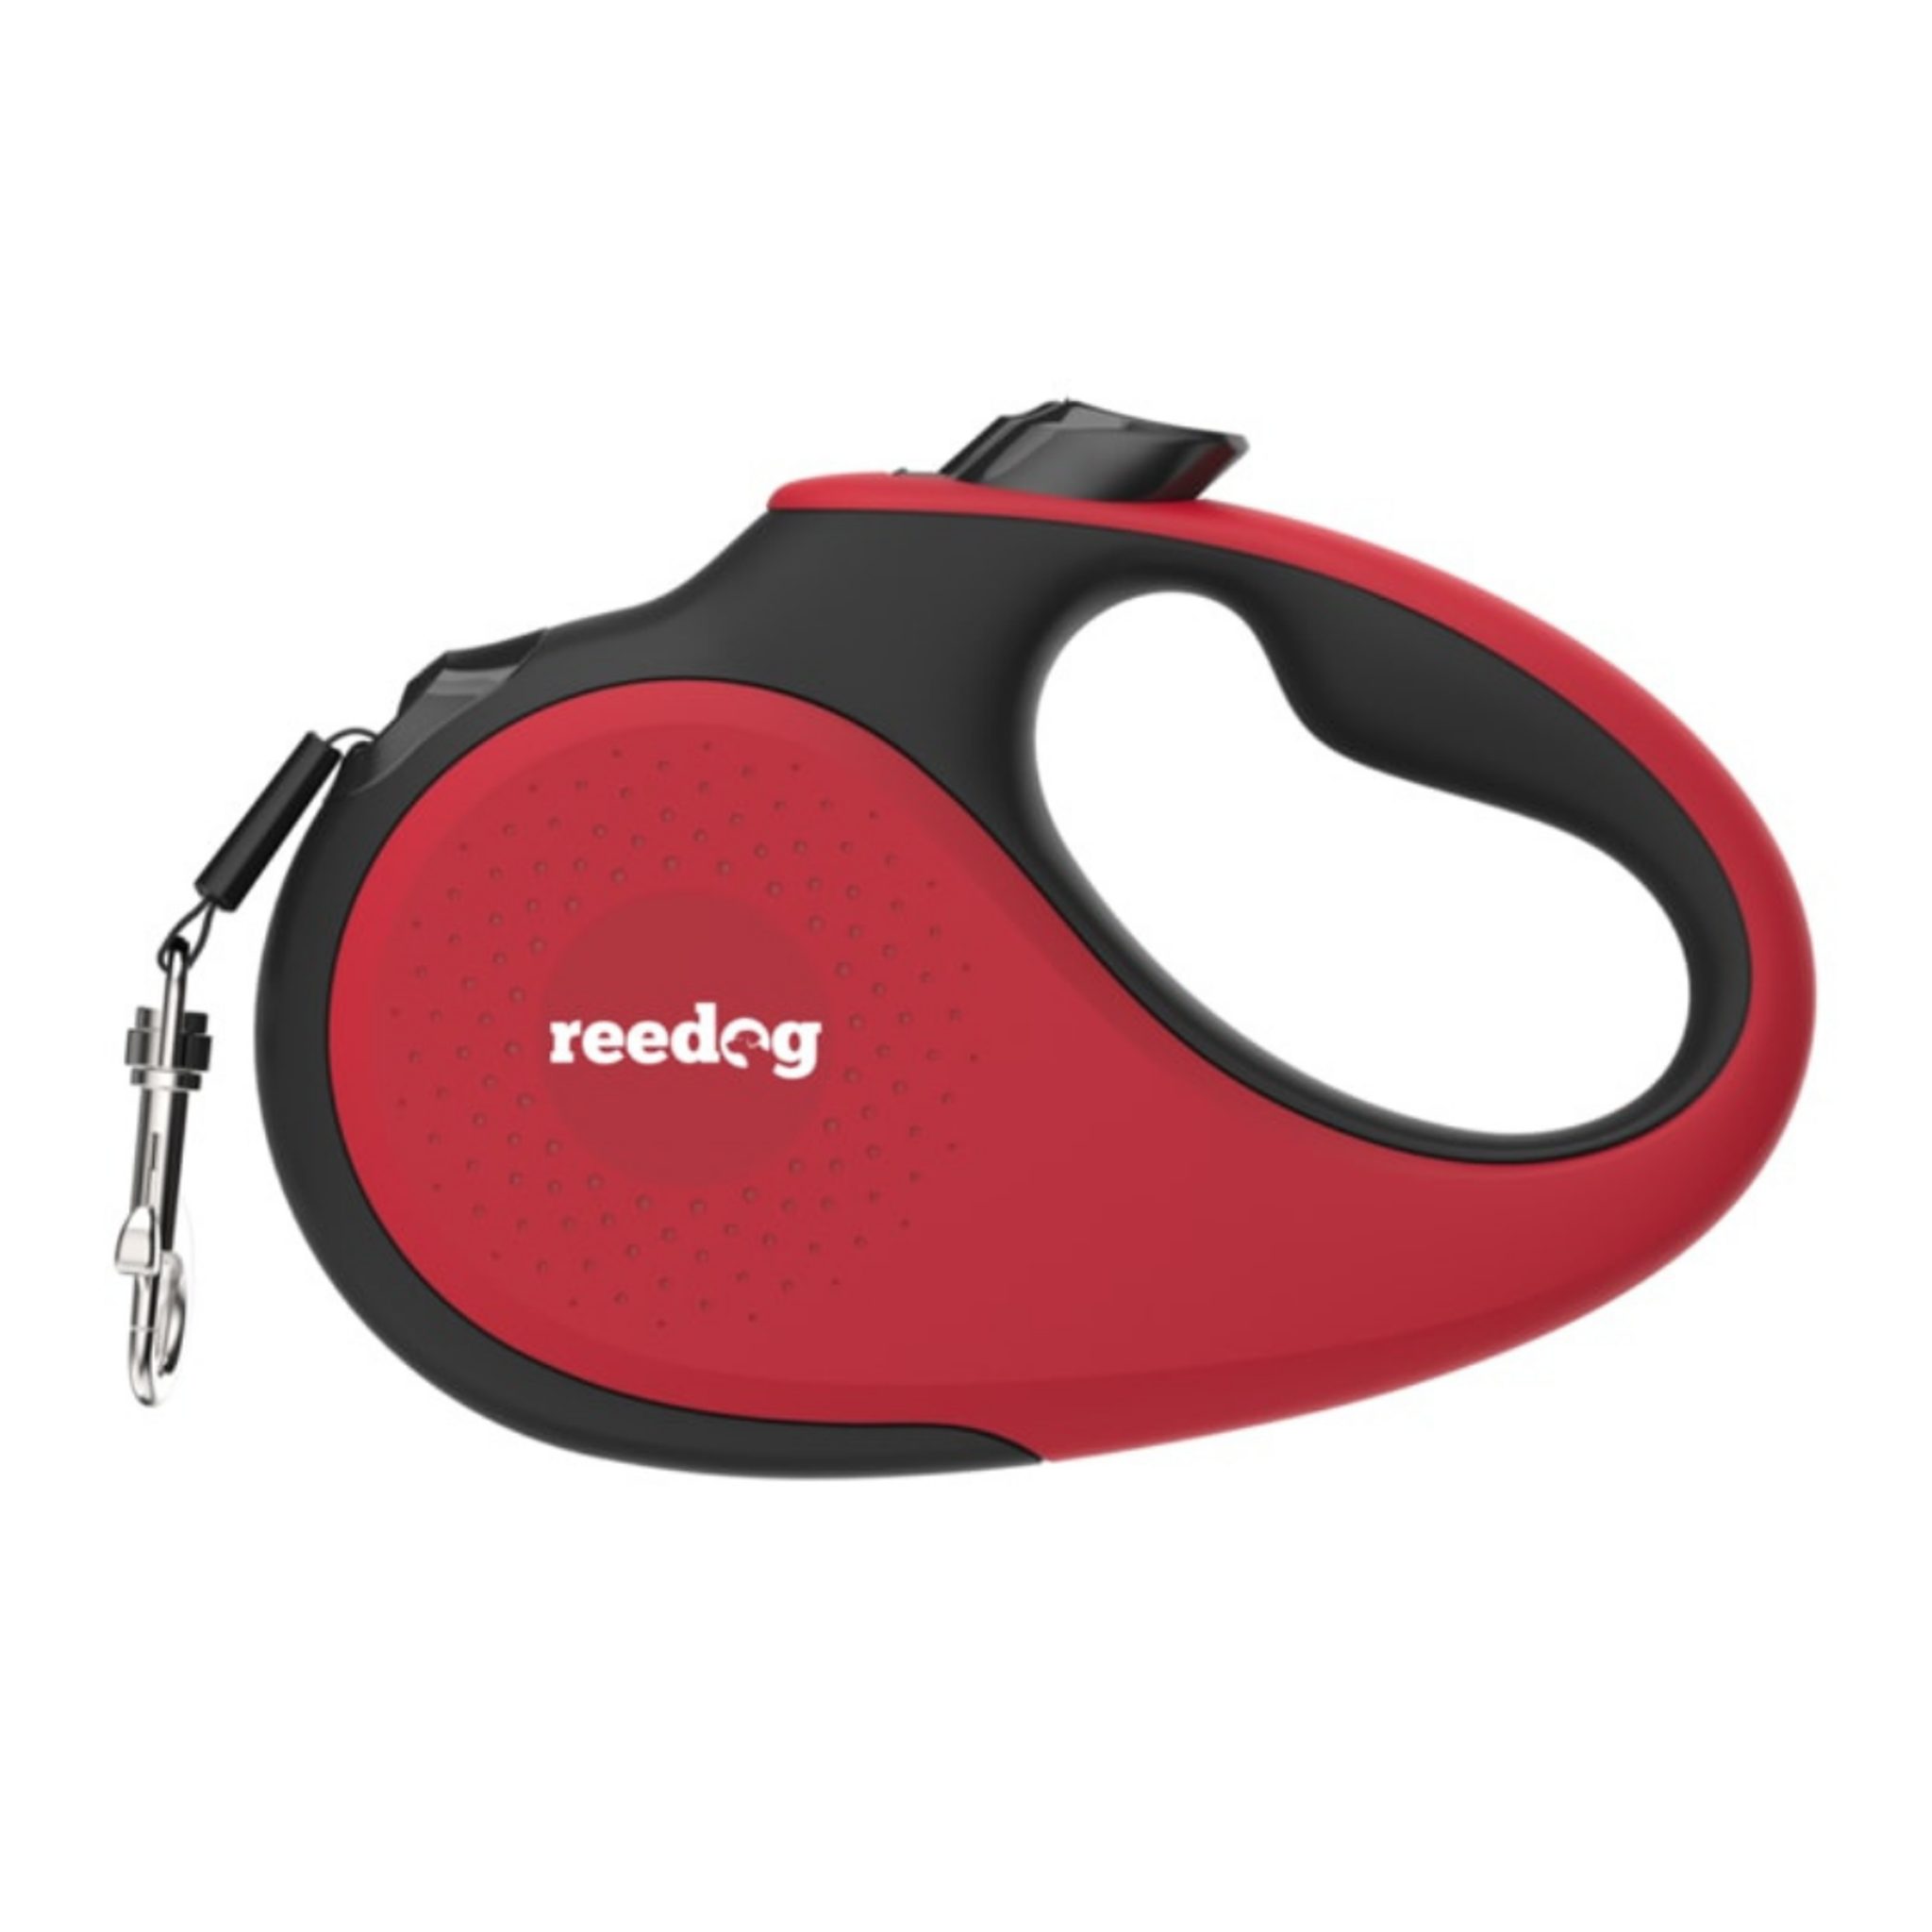 Reedog Senza Premium samonavíjecí vodítko M 25kg / 5m páska / červené